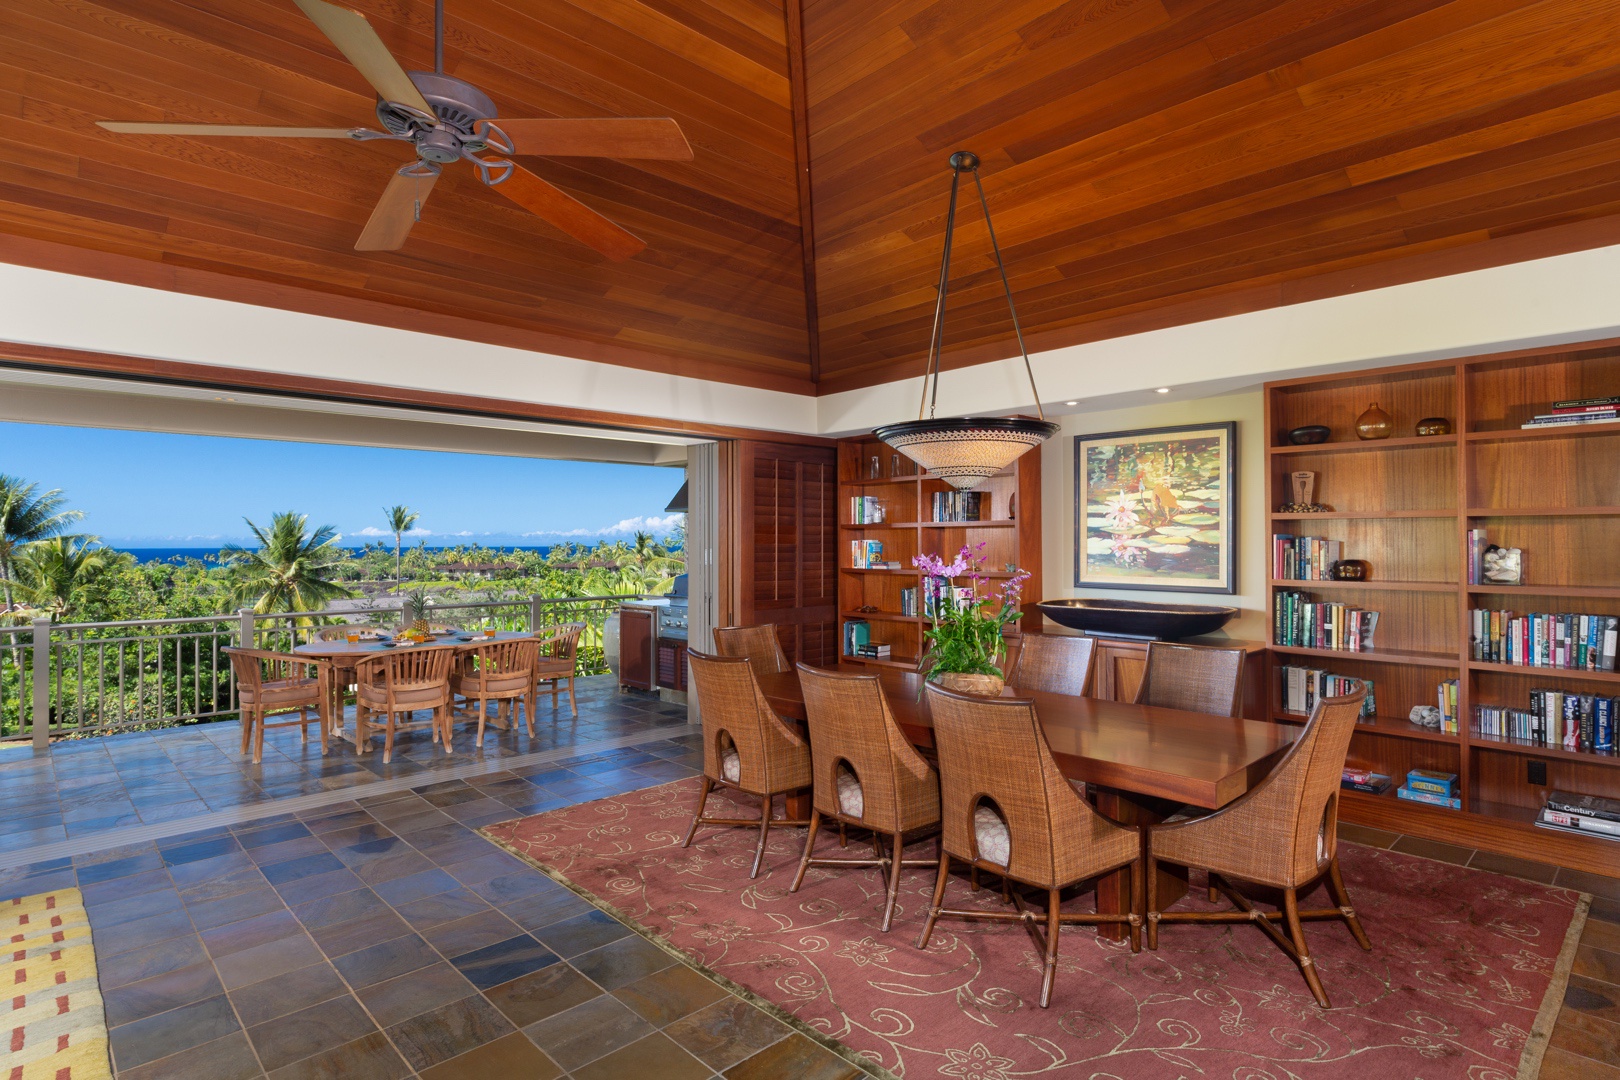 Kailua Kona Vacation Rentals, 3BD Ke Alaula Villa (210A) at Four Seasons Resort at Hualalai - Closer view of formal dining table for 8, ideal for group gatherings.